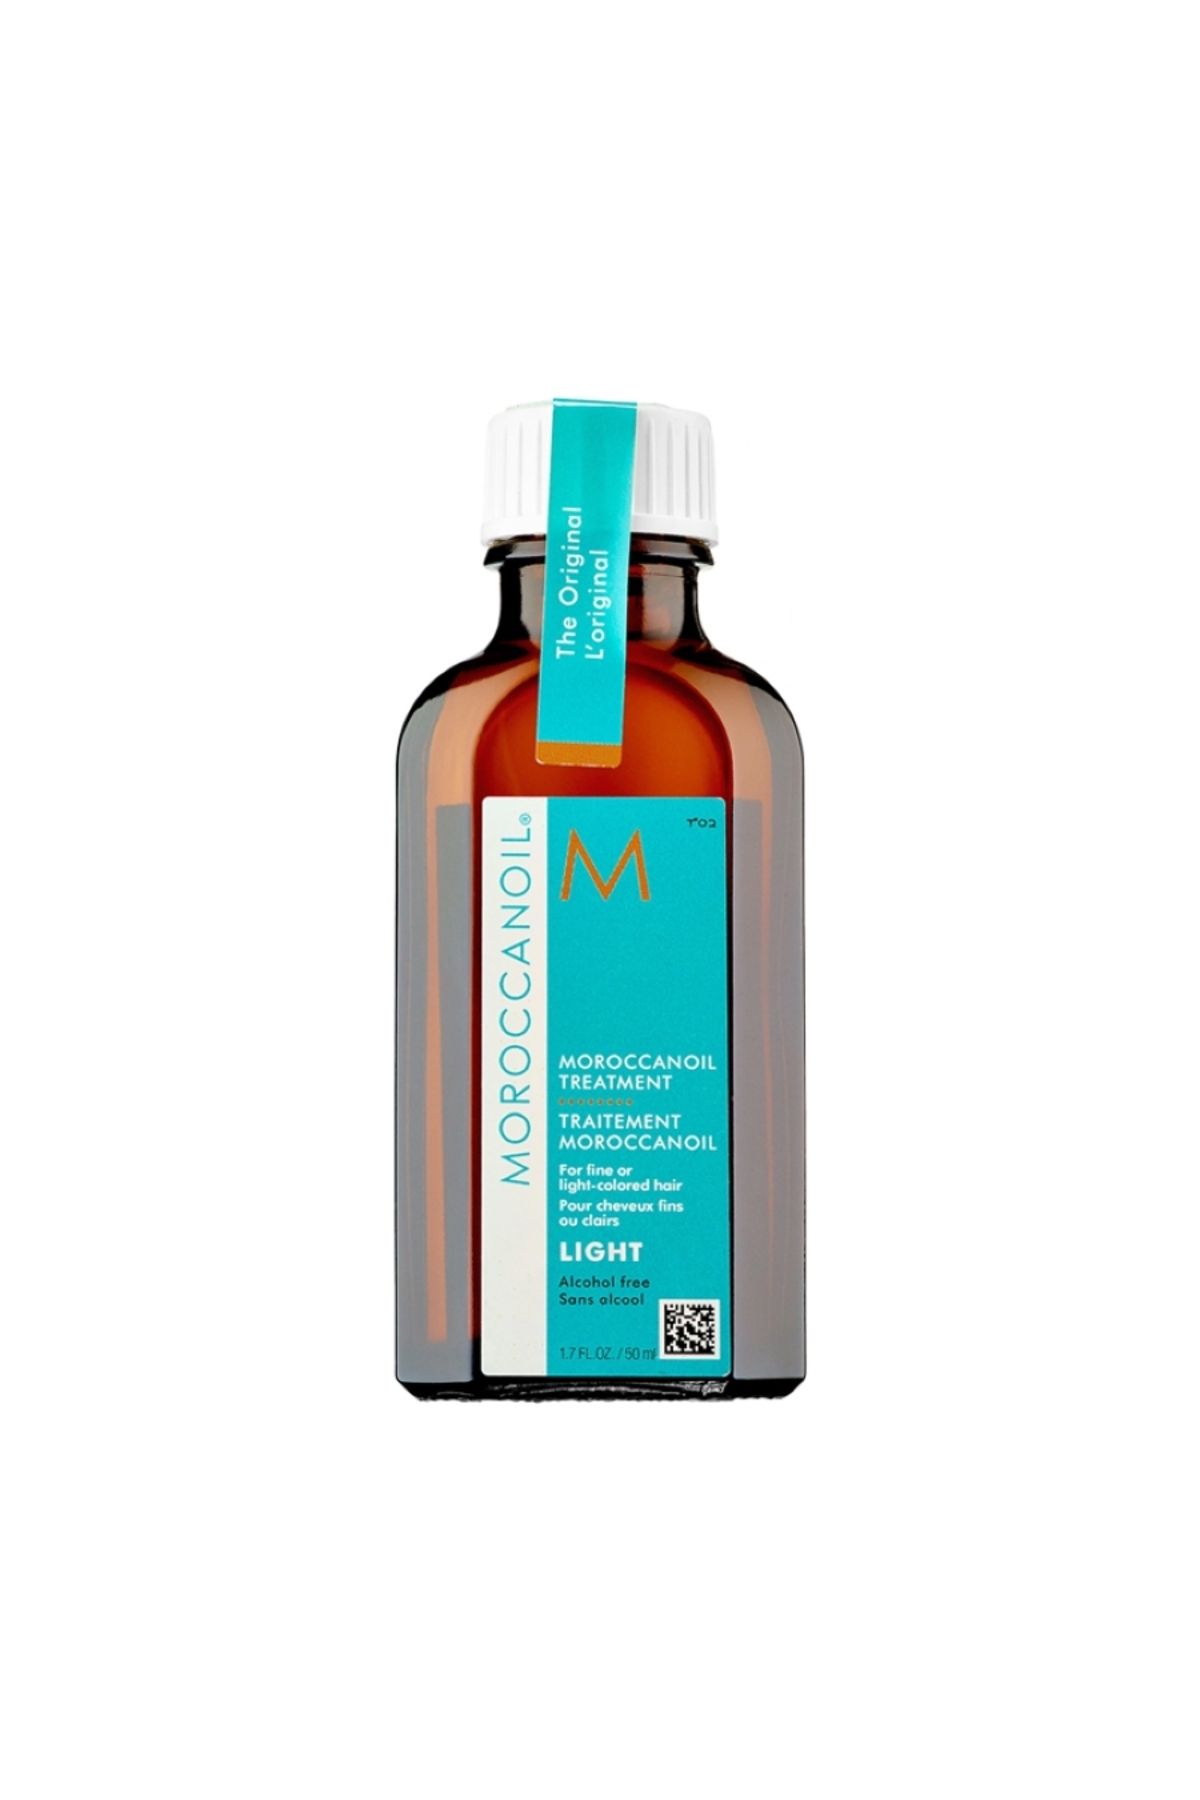 Moroccanoil Mco Light Treatment Hızlı Emişli Argan Yağlı Saç Bakım Yağı 50 ml